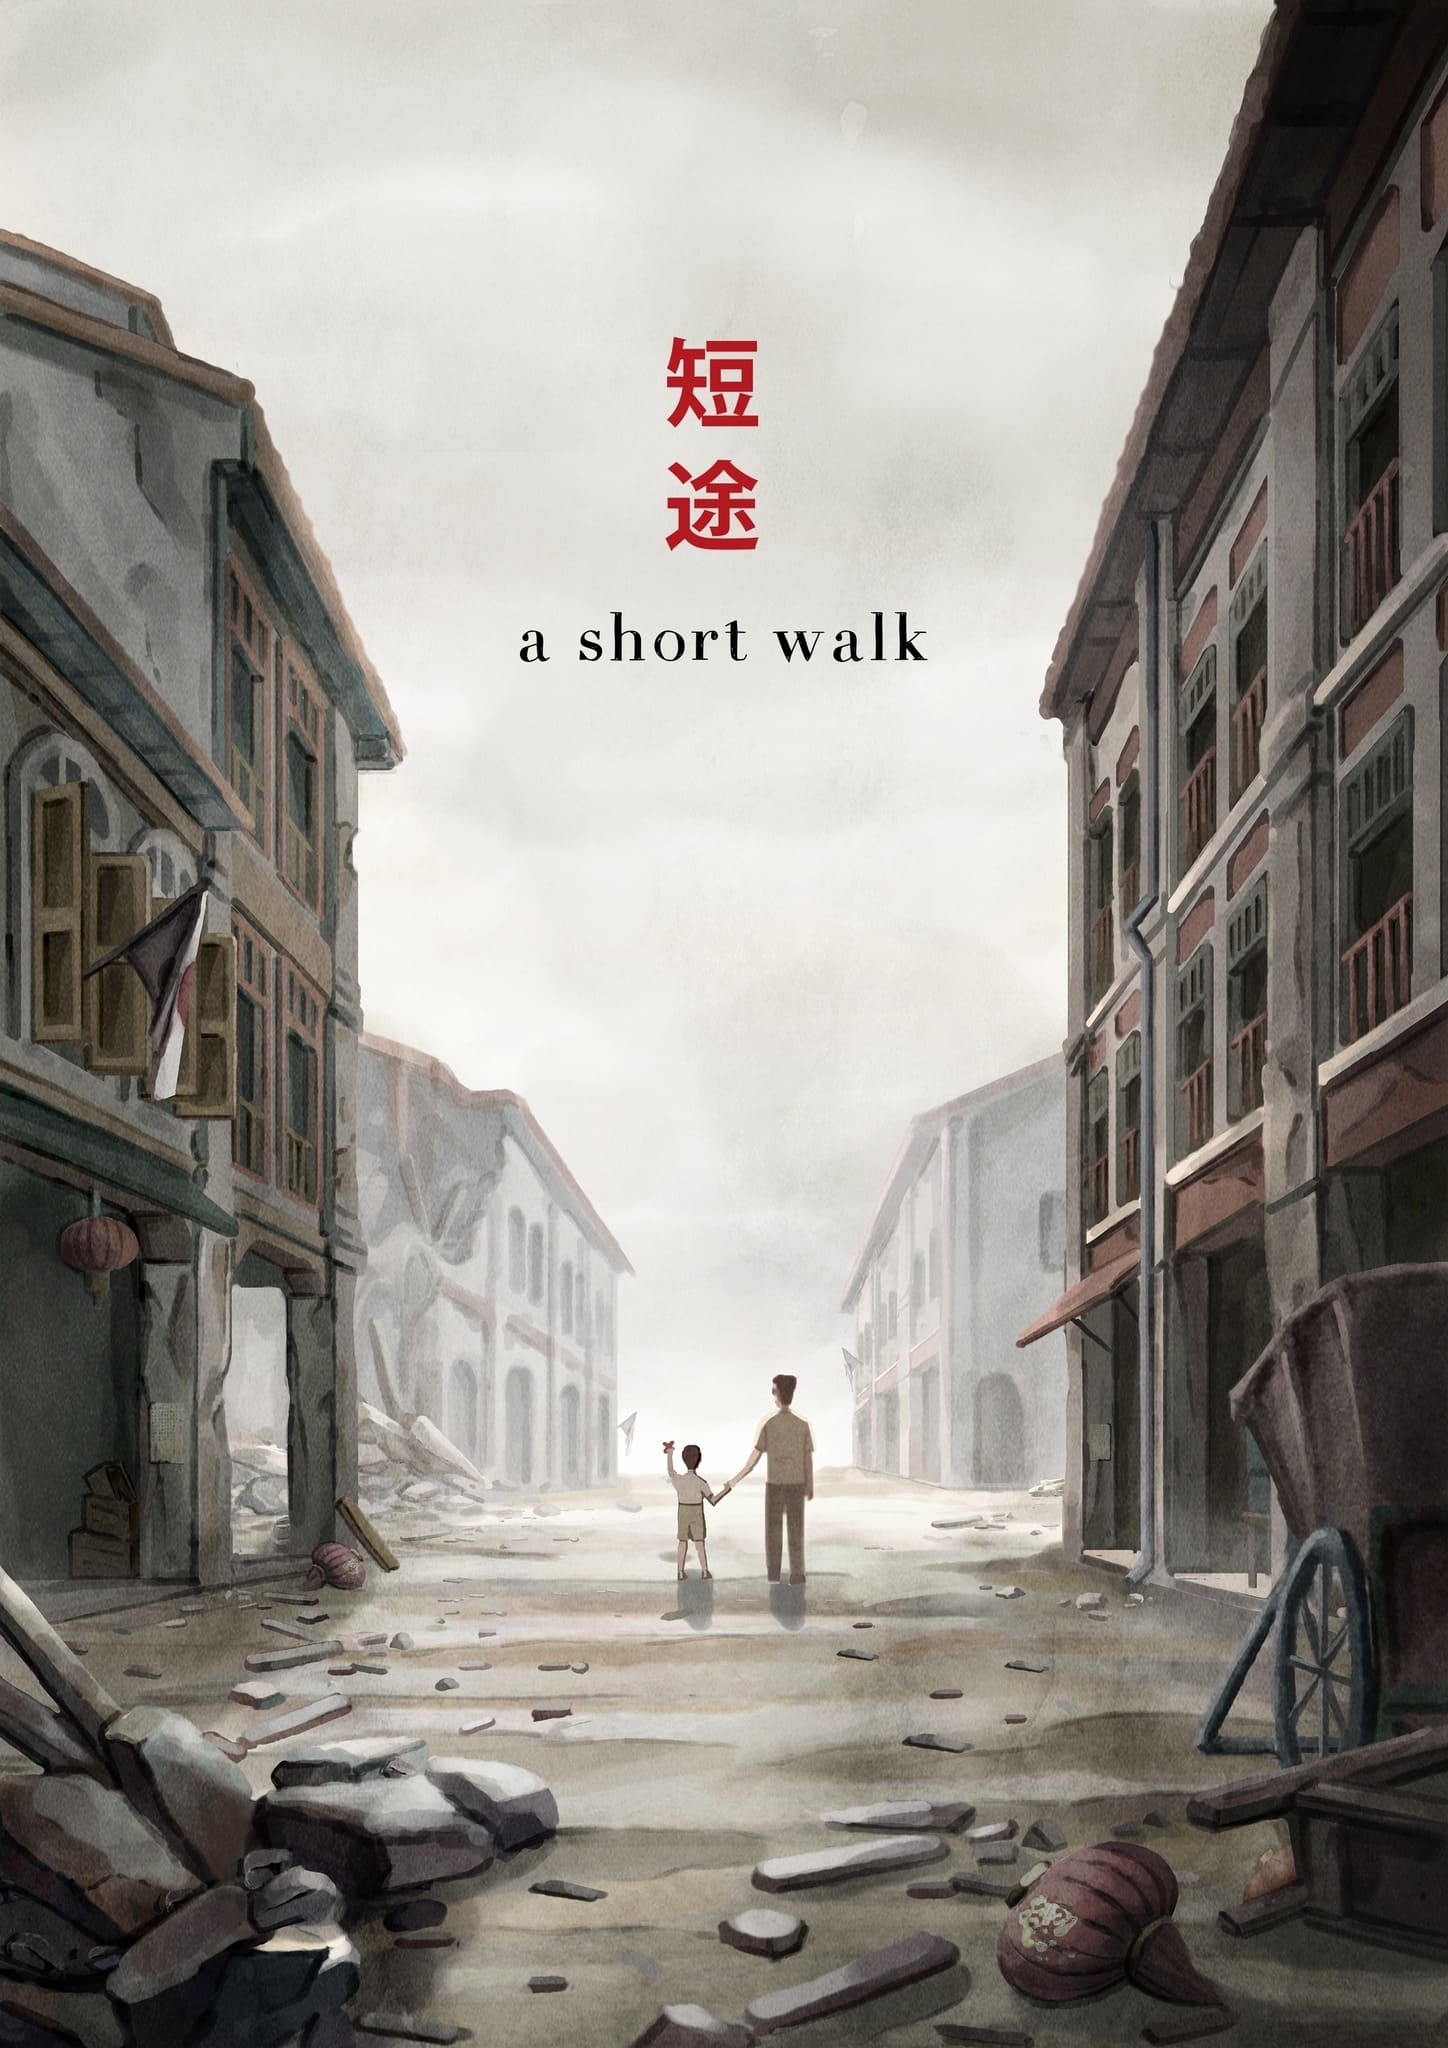 A Short Walk